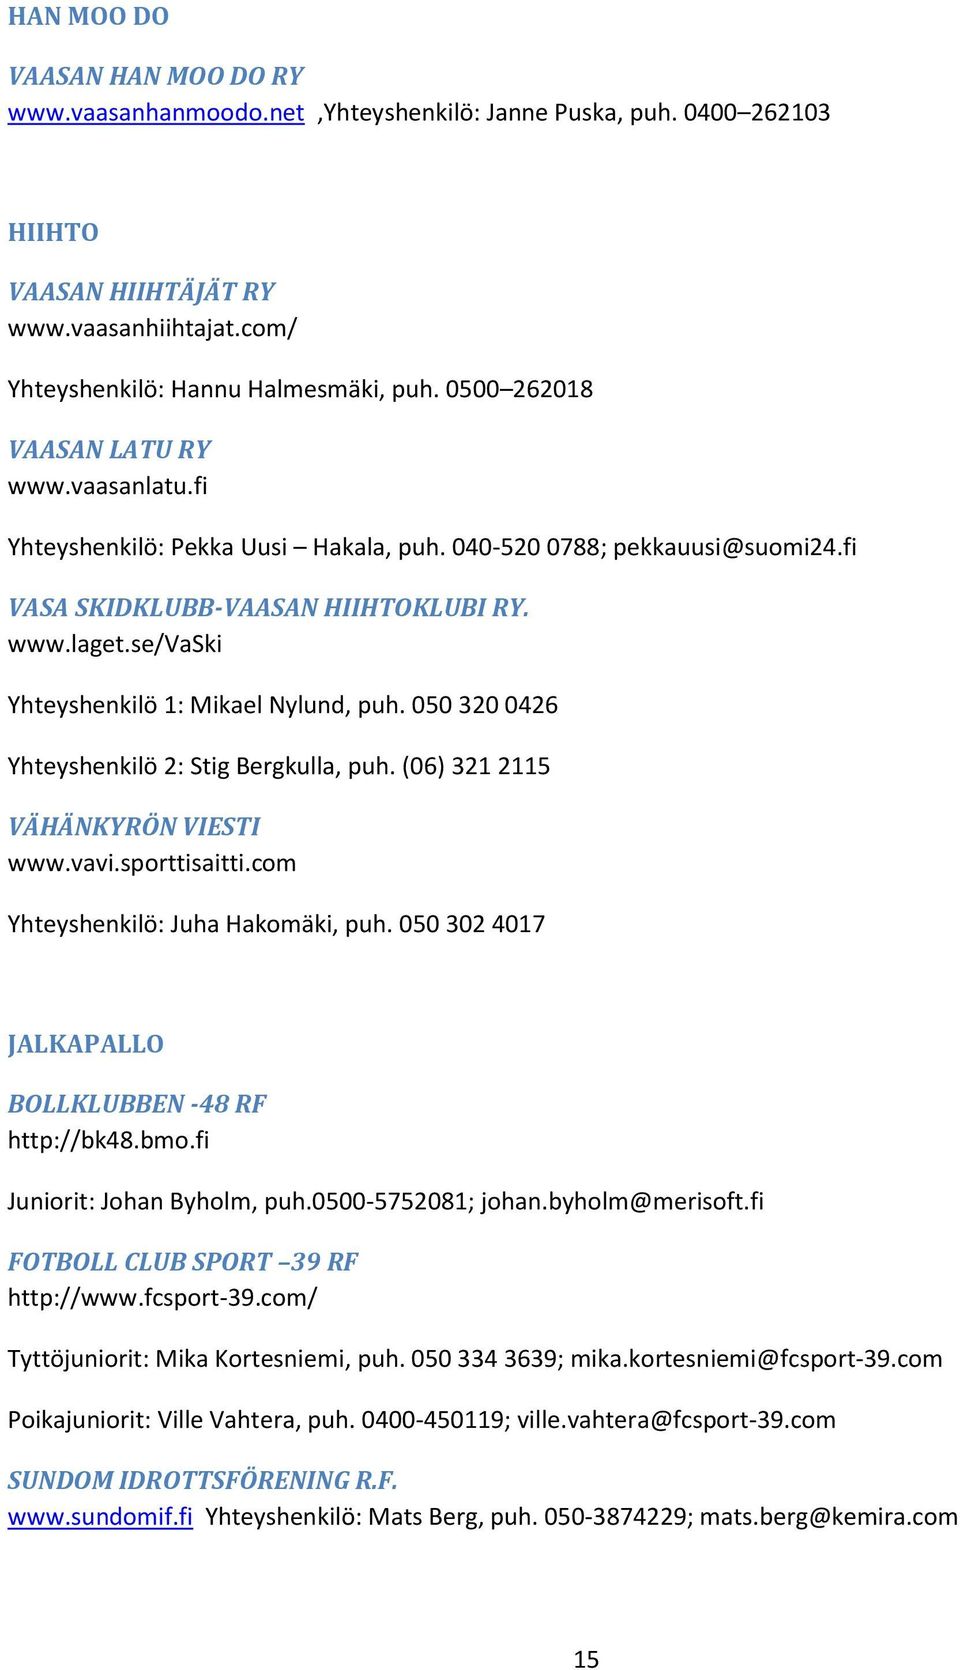 se/vaski Yhteyshenkilö 1: Mikael Nylund, puh. 050 320 0426 Yhteyshenkilö 2: Stig Bergkulla, puh. (06) 321 2115 VÄHÄNKYRÖN VIESTI www.vavi.sporttisaitti.com Yhteyshenkilö: Juha Hakomäki, puh.